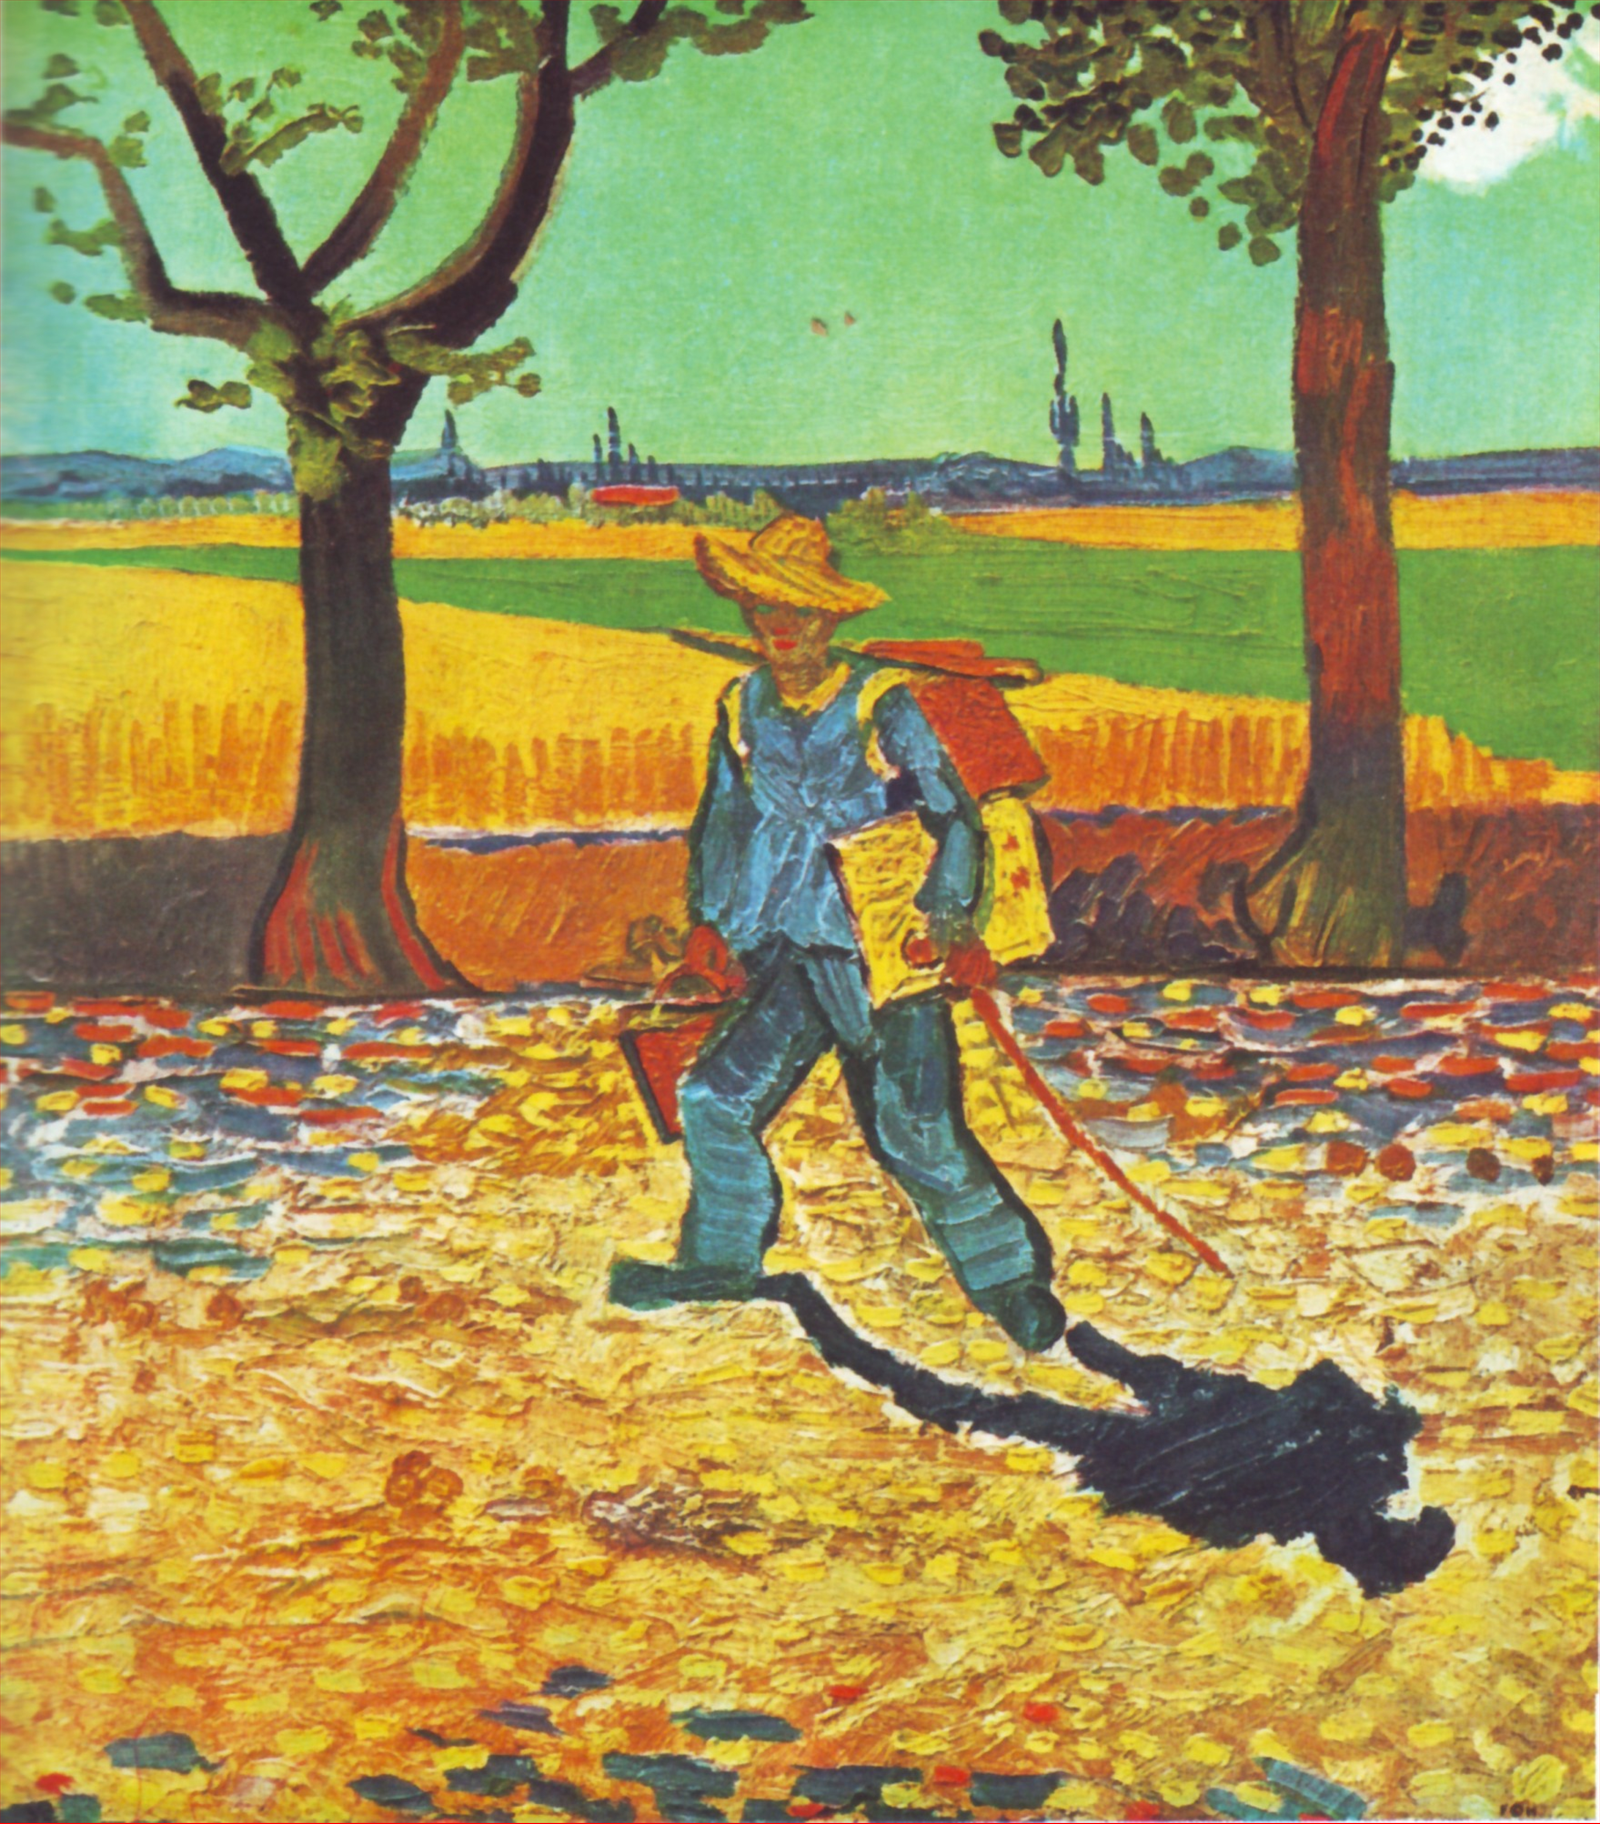 Pictor în drumul lui spre lucru  by Vincent van Gogh - 1888 - - 